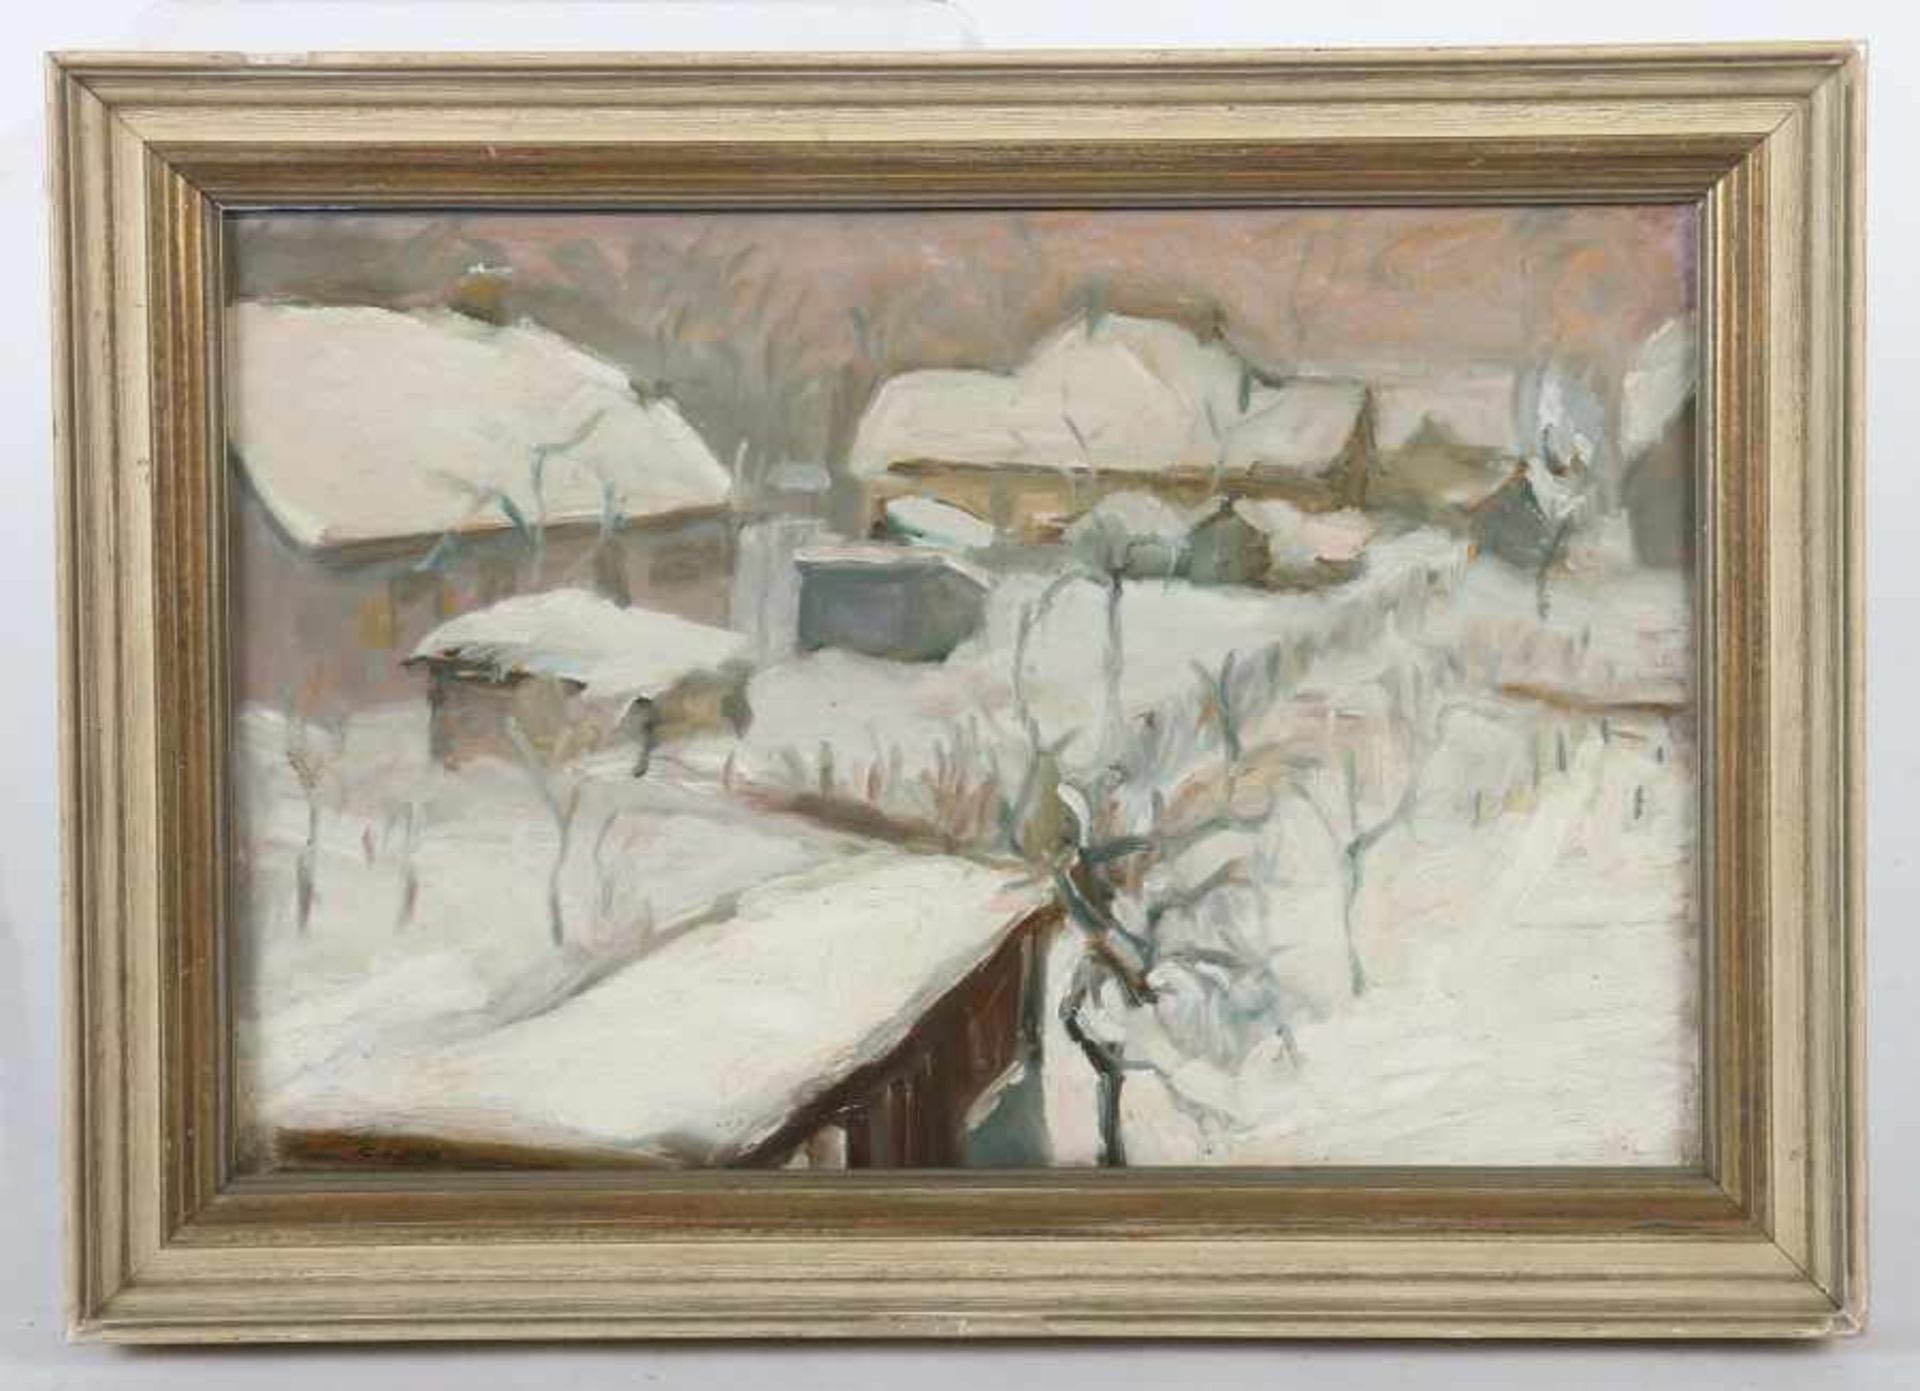 Kohlhoff, WilhelmBerlin 1893 - 1971 ebenda, deutscher Maler. "Winter in der Berliner Vorstadt", - Bild 2 aus 4